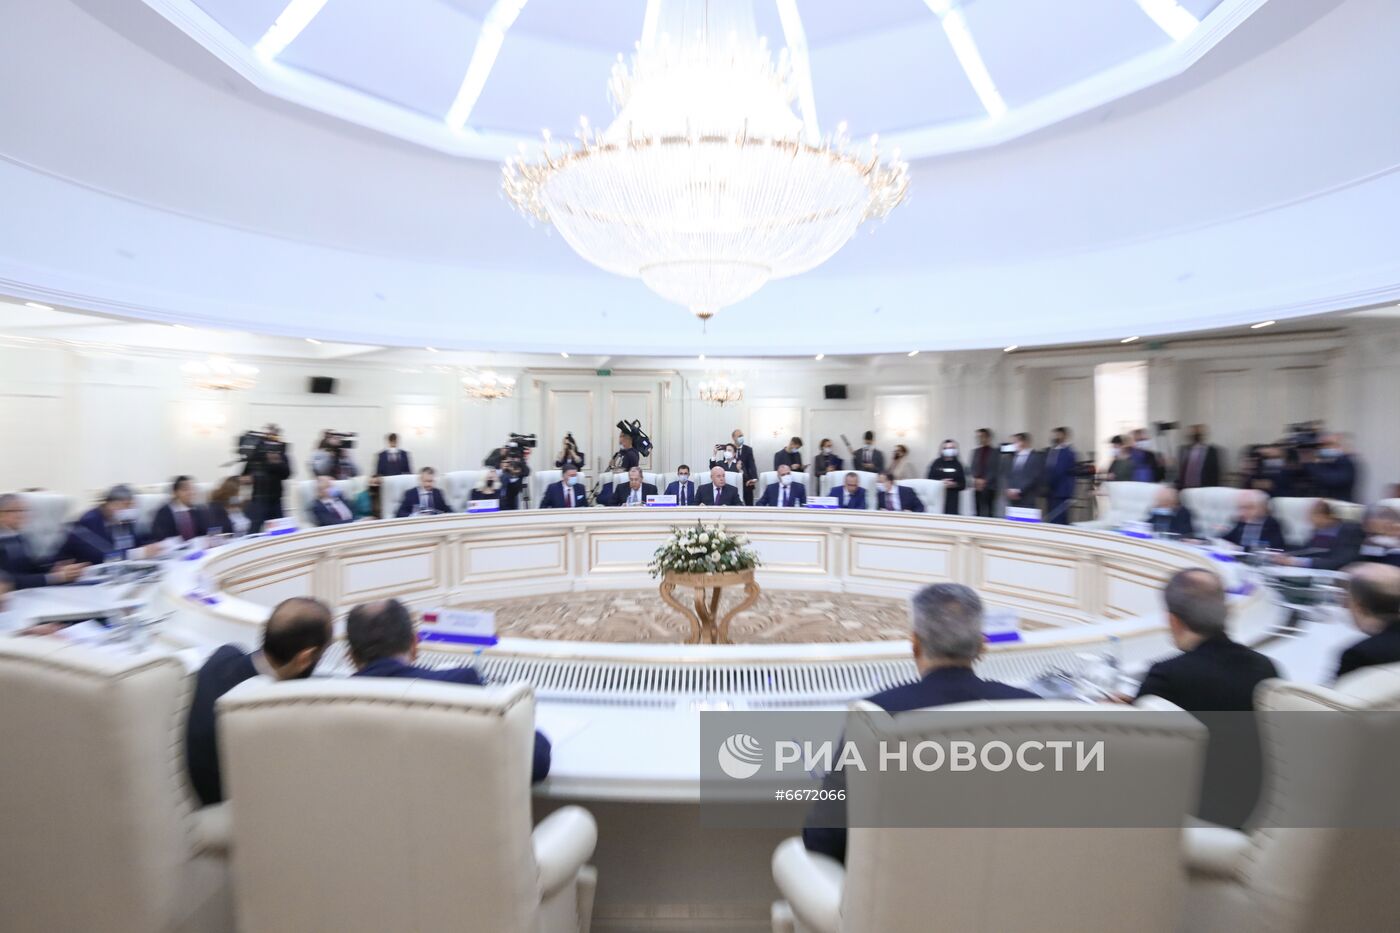 Совет министров иностранных дел СНГ в Минске